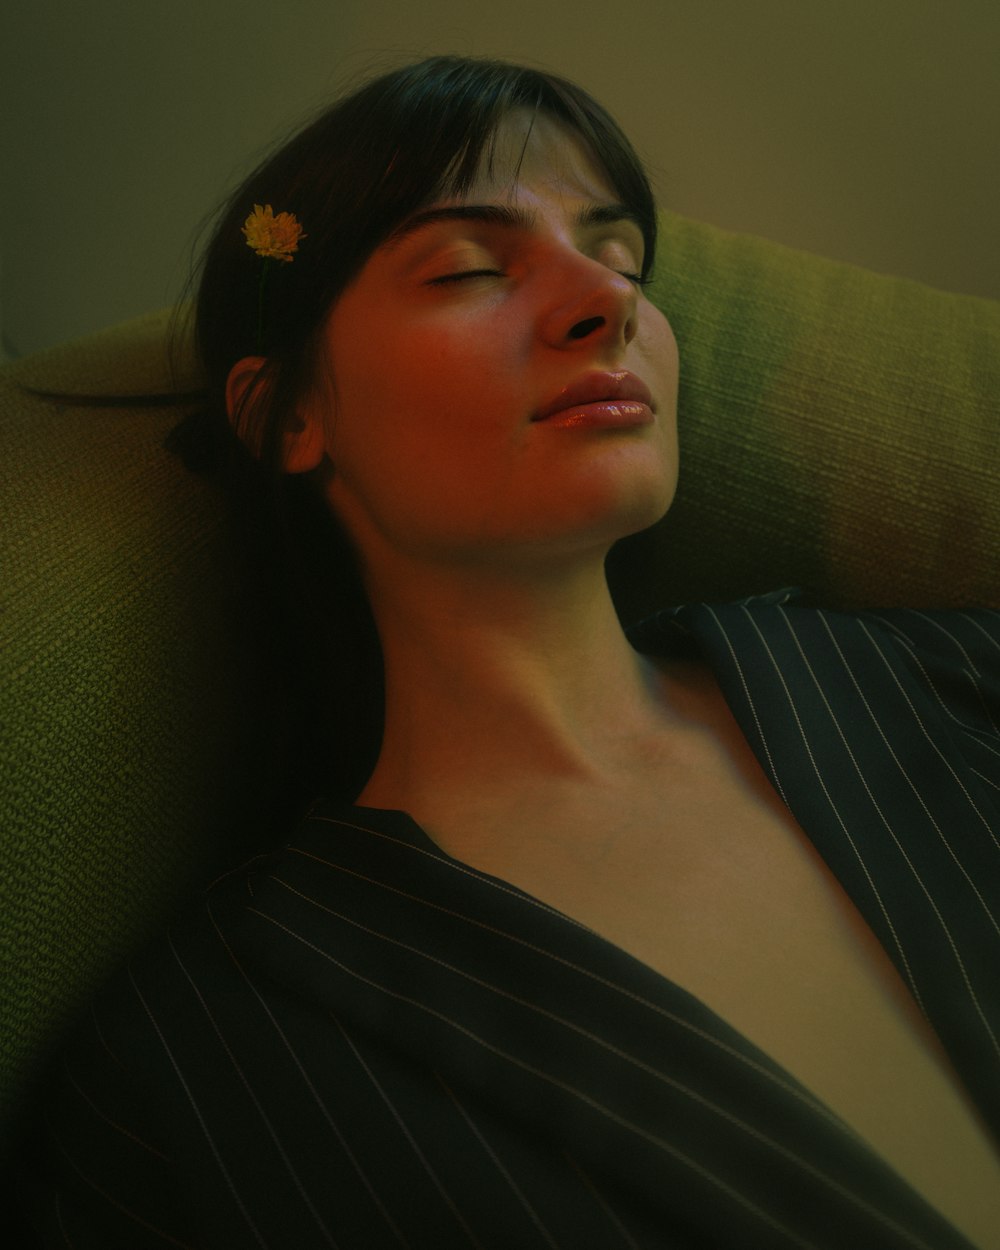 uma mulher dormindo em um sofá com uma flor no cabelo